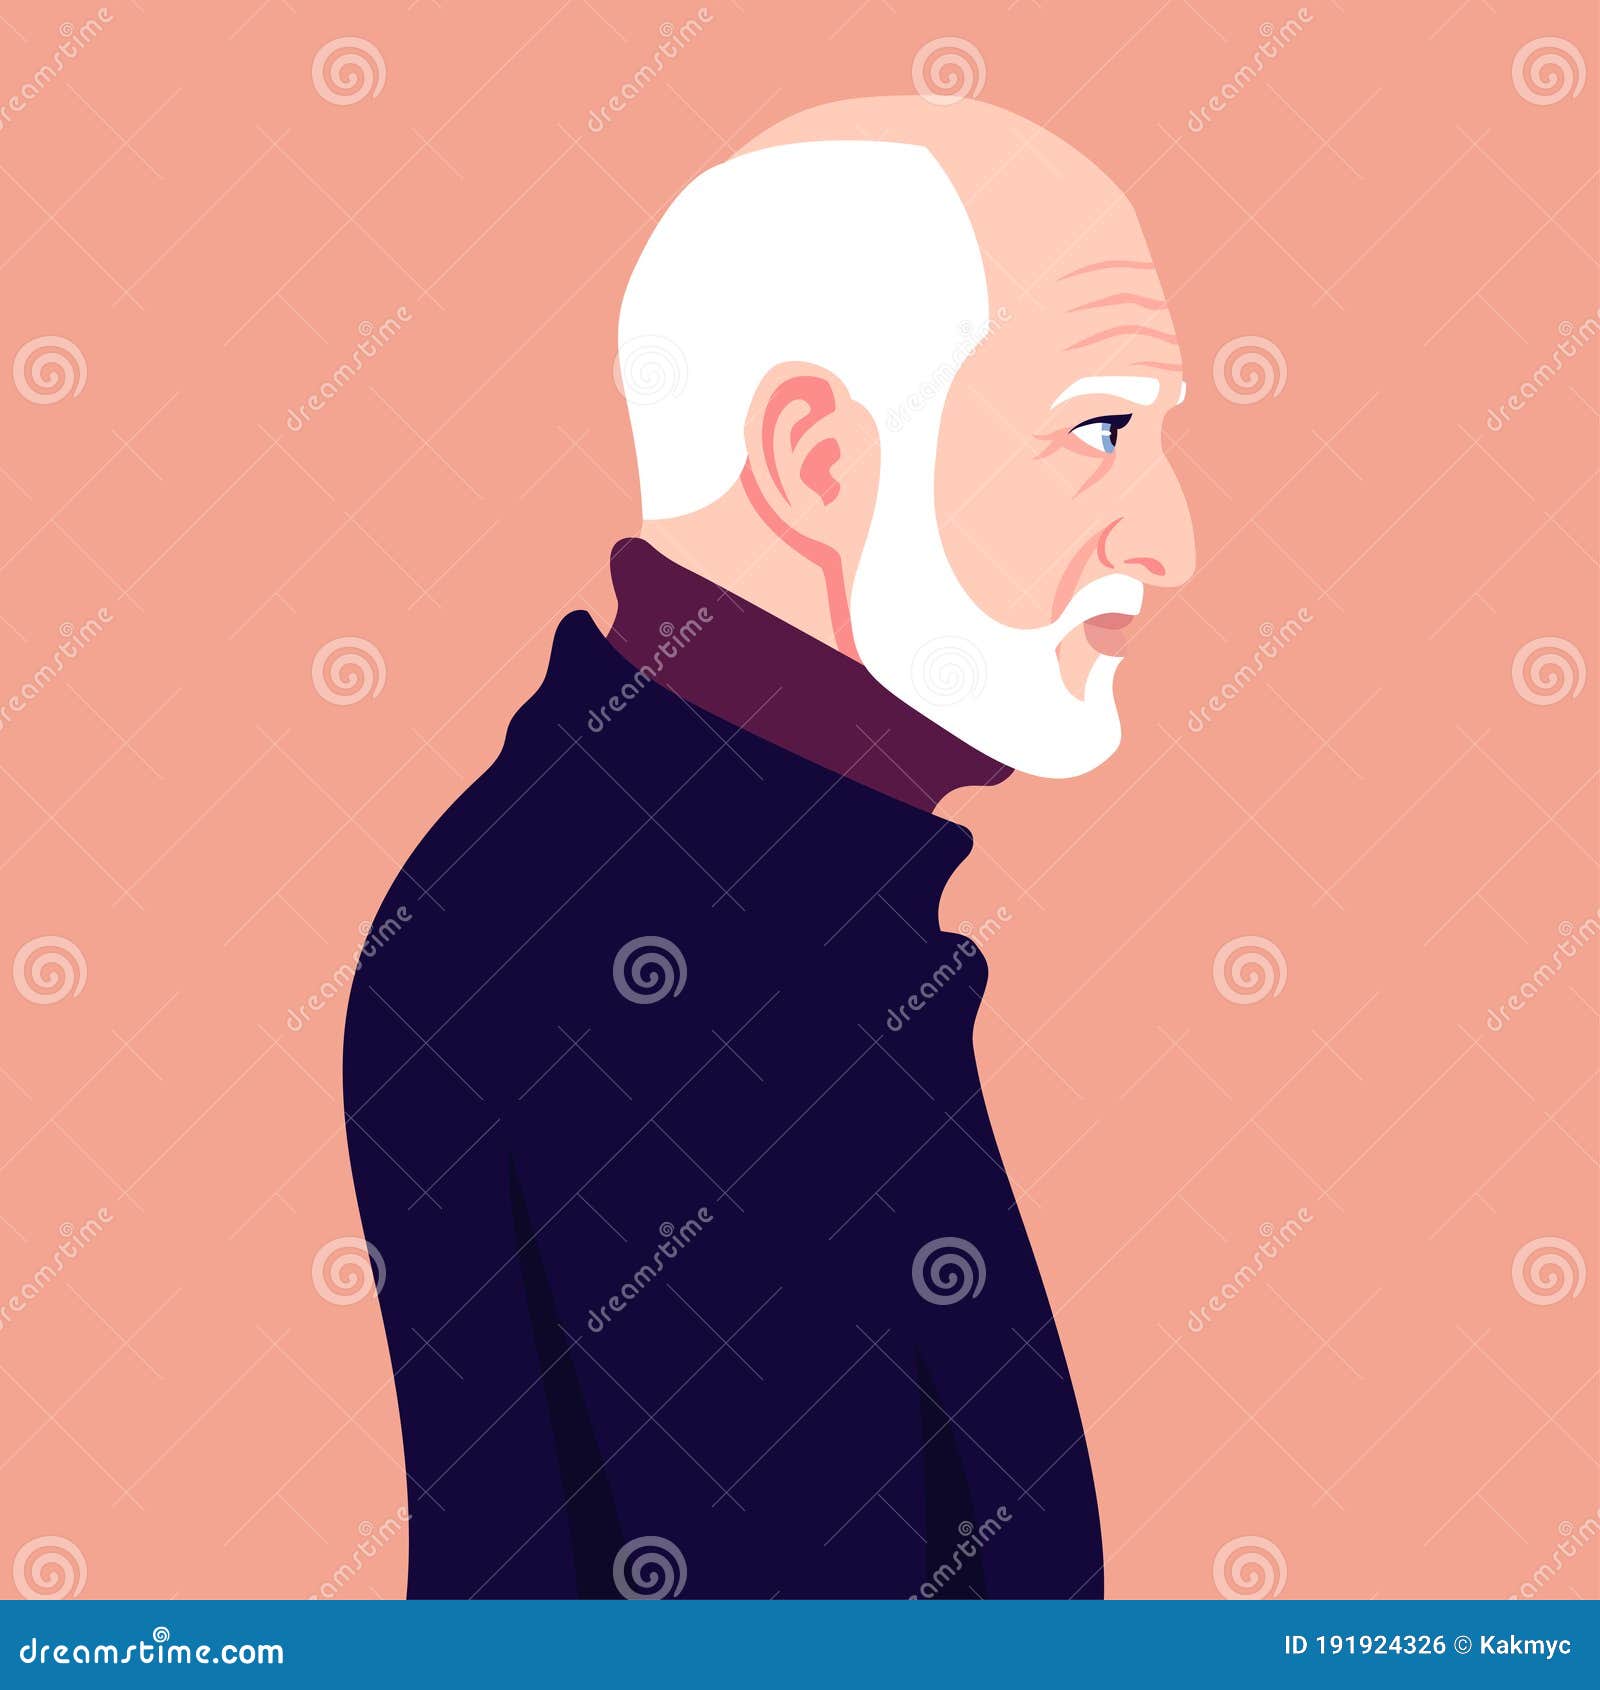 Homem careca - Personagem dos desenhos animados - Ilustração vetorial  imagem vetorial de baavli© 15211487